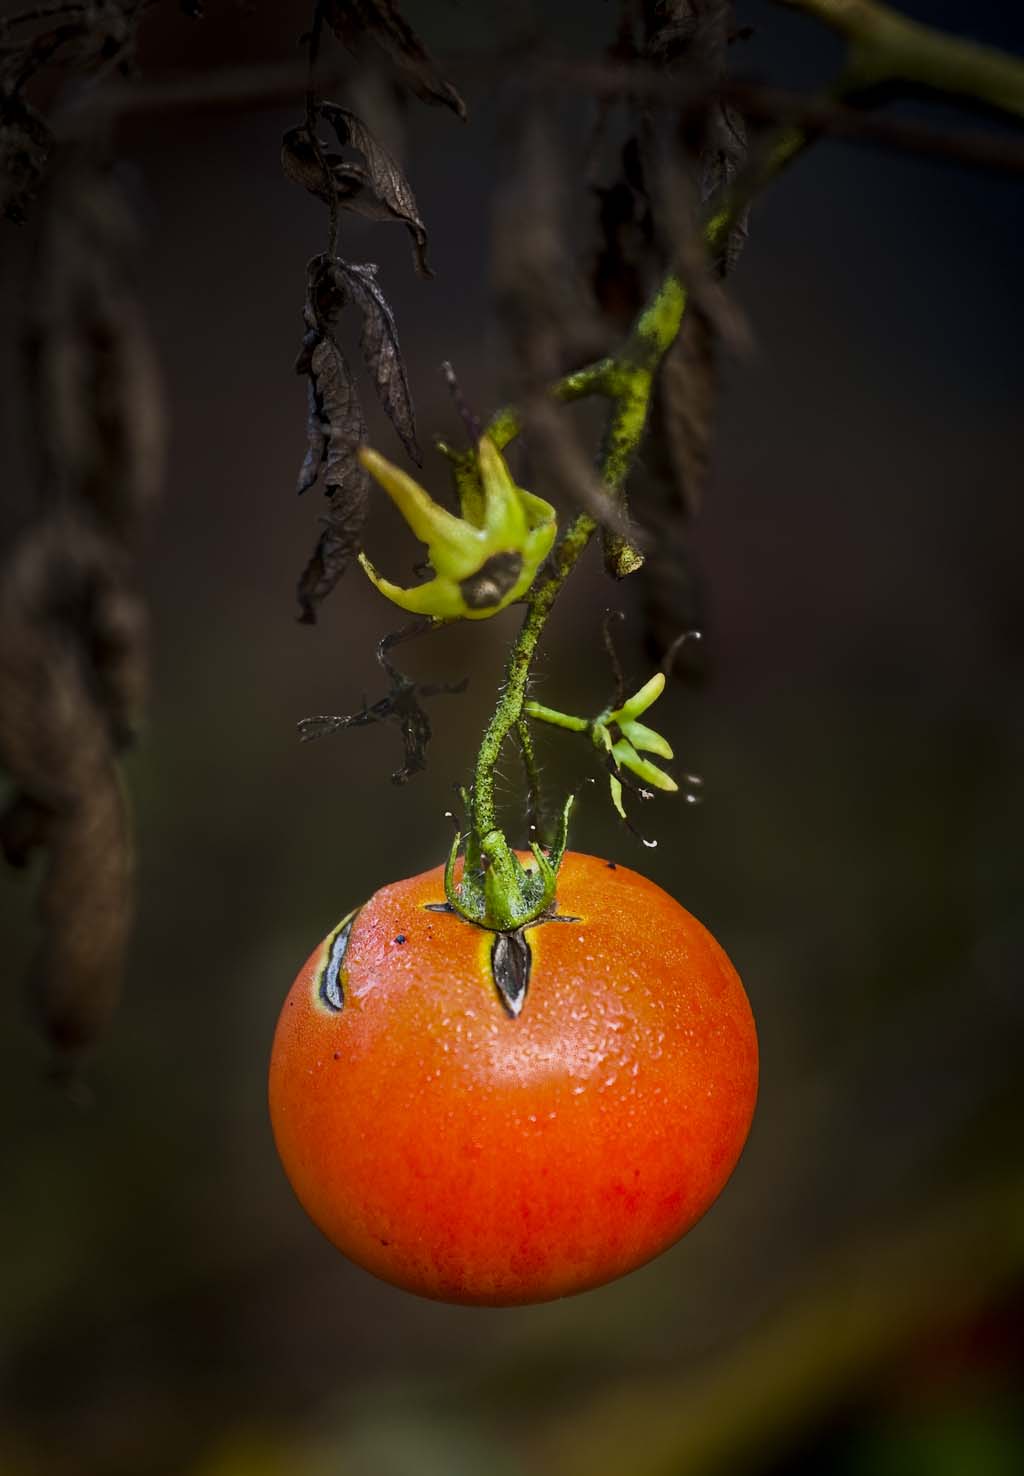 The last tomato